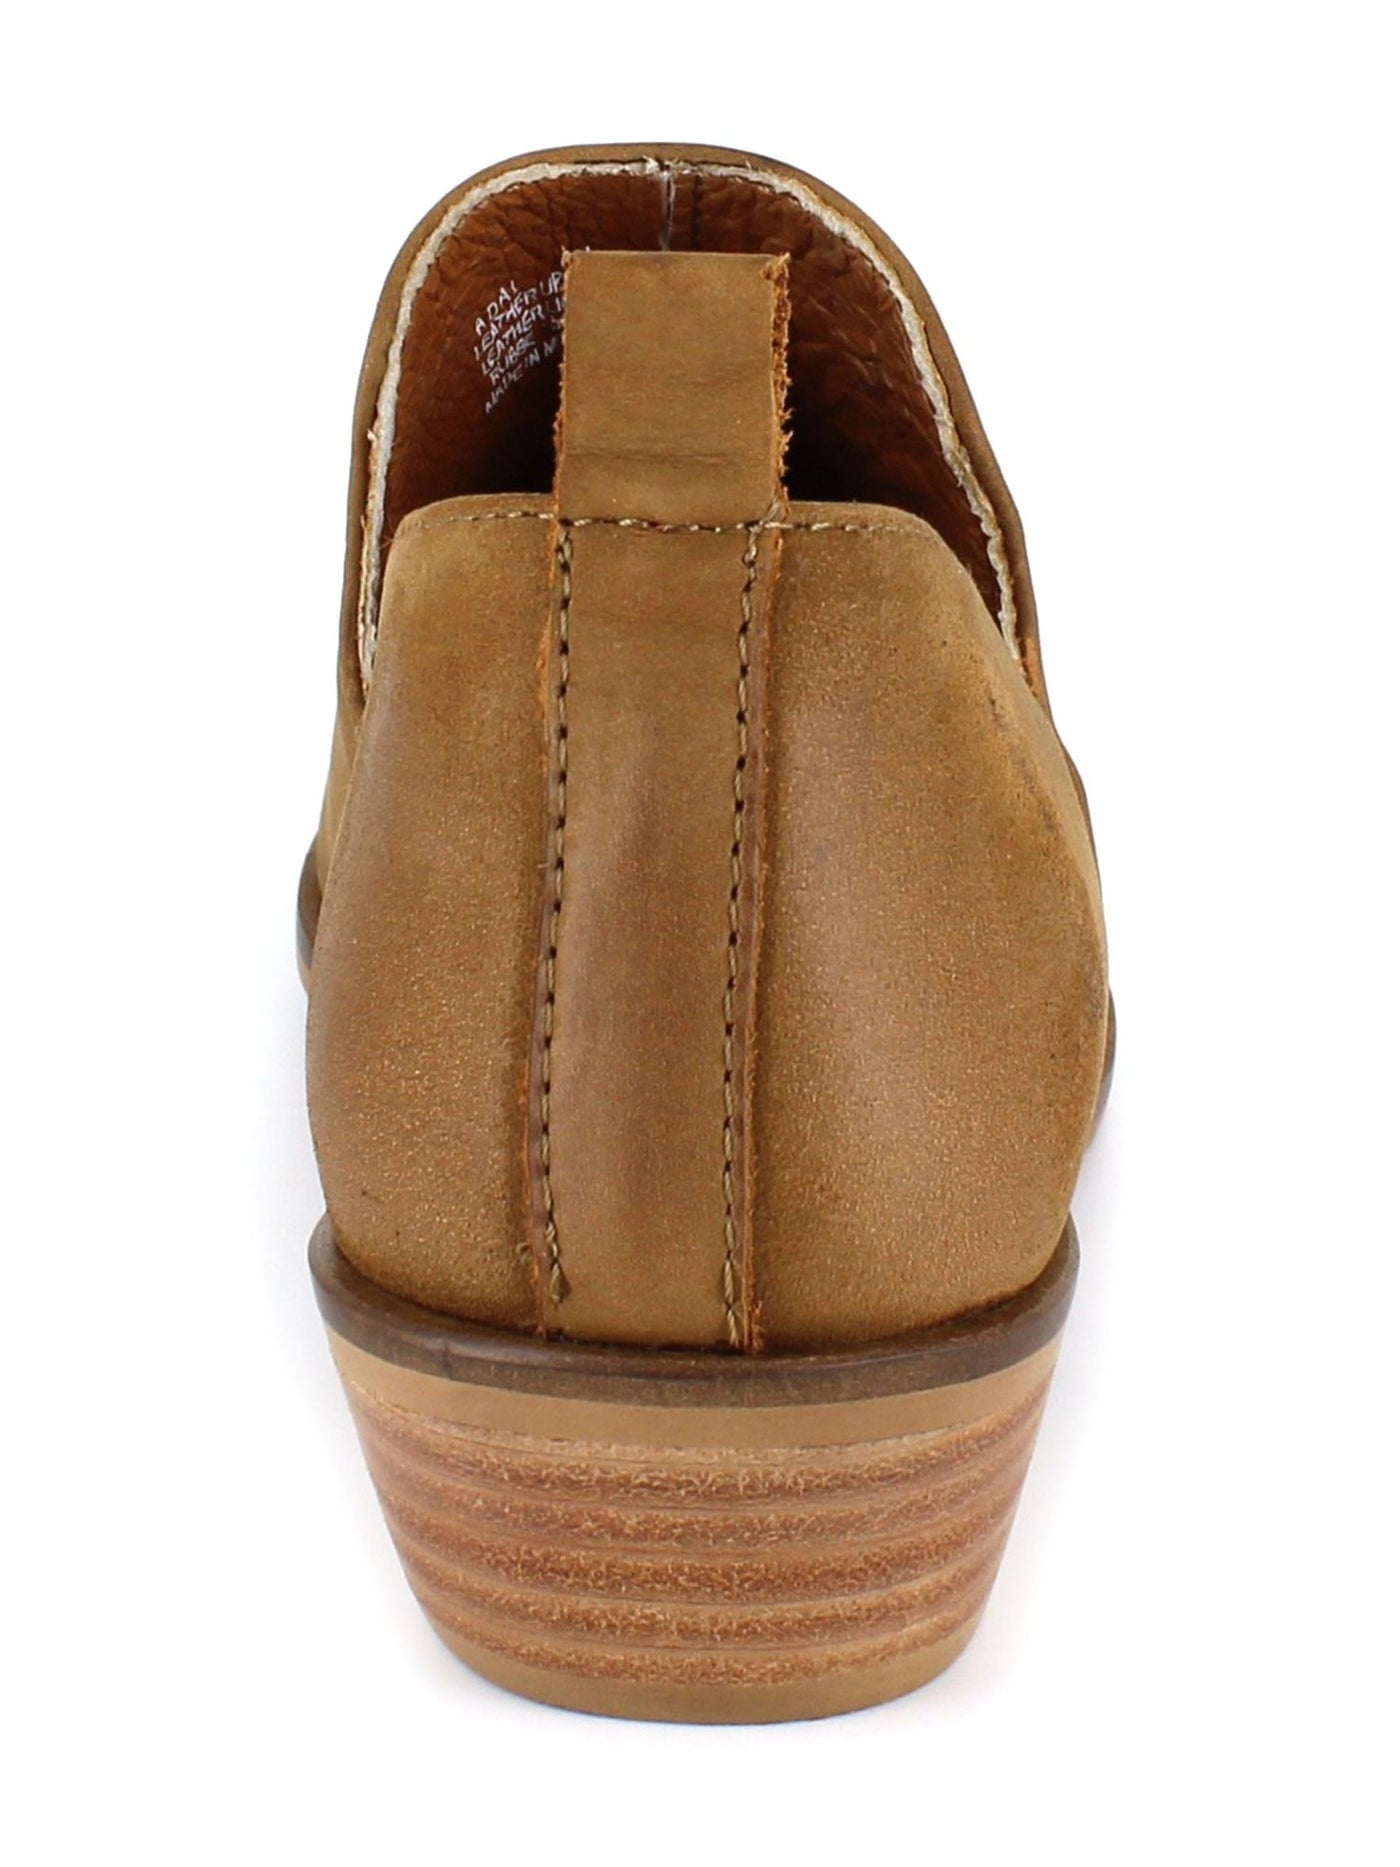 ARTISAN BY ZIGI Womens Brown Comfort Adal Pointed Toe Block Heel Slip On Leather Booties 8.5 M